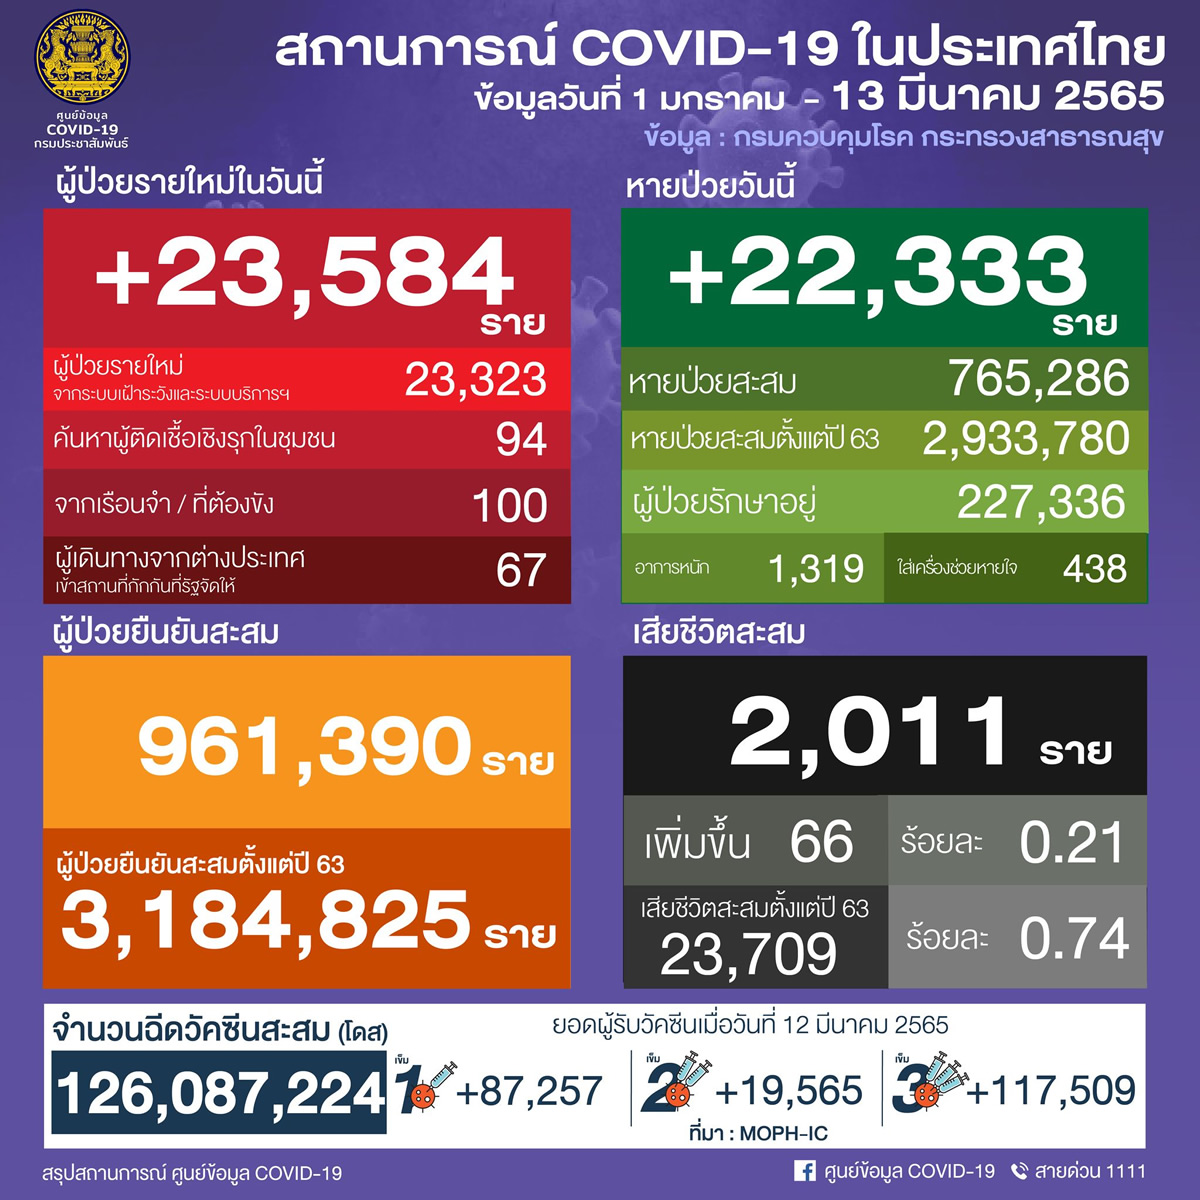 タイ 23,584人陽性 66人死亡／バンコク 2,967人陽性／ナコンシータマラート 1,438人陽性／チョンブリ 1,191人陽性［2022年3月13日発表］